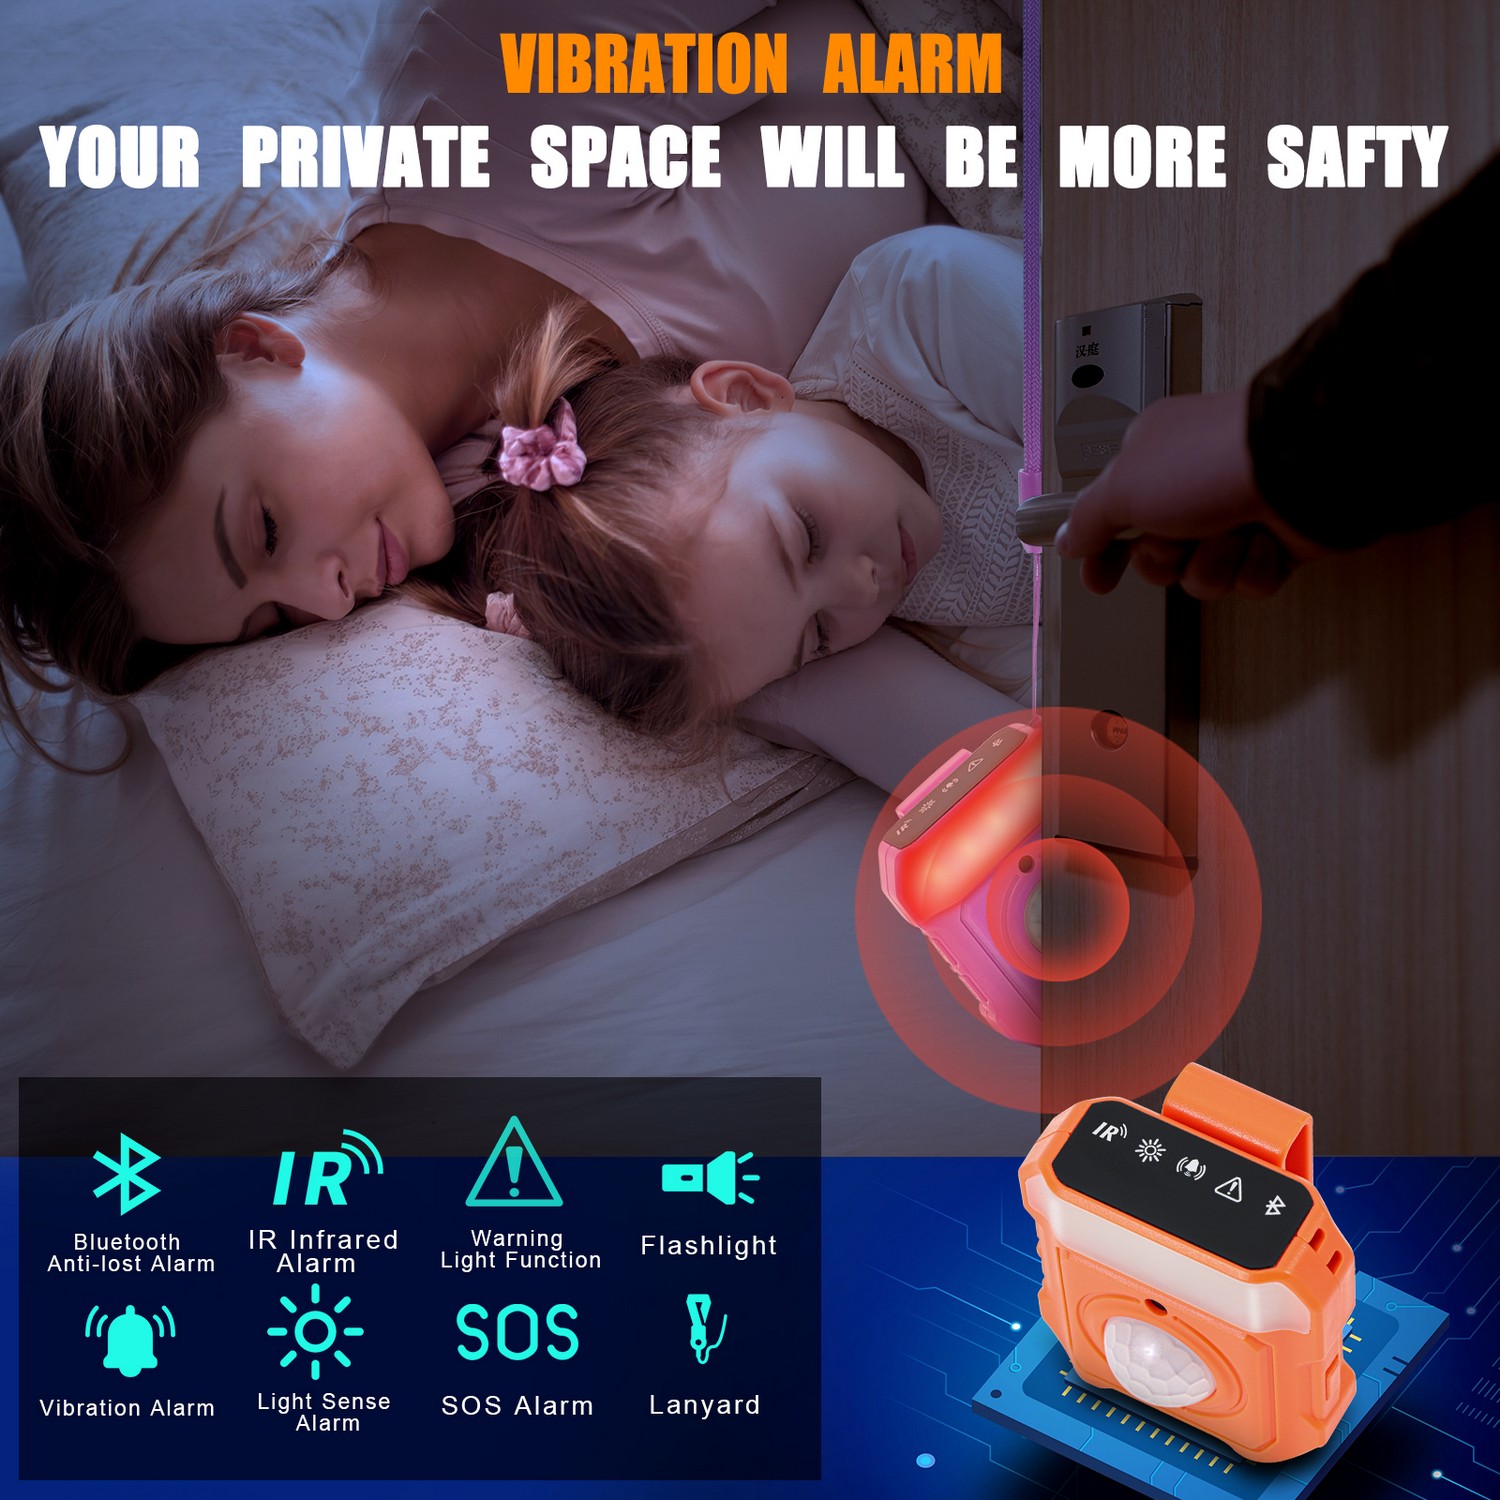 lični sigurnosni alarm - vibracioni alarm